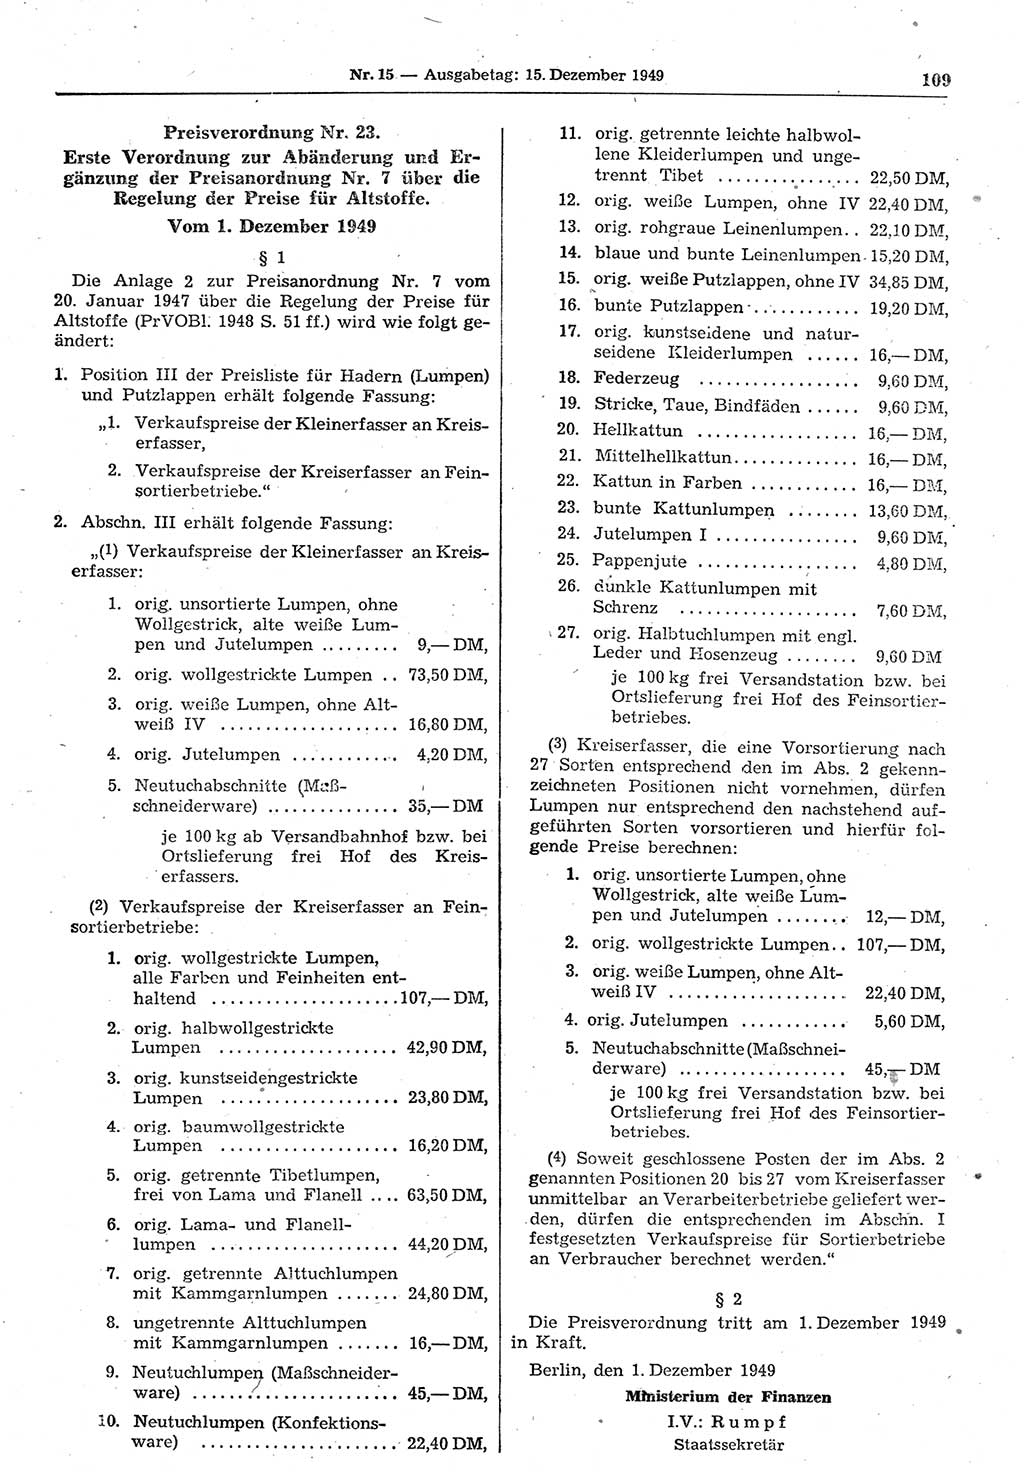 Gesetzblatt (GBl.) der Deutschen Demokratischen Republik (DDR) 1949, Seite 109 (GBl. DDR 1949, S. 109)